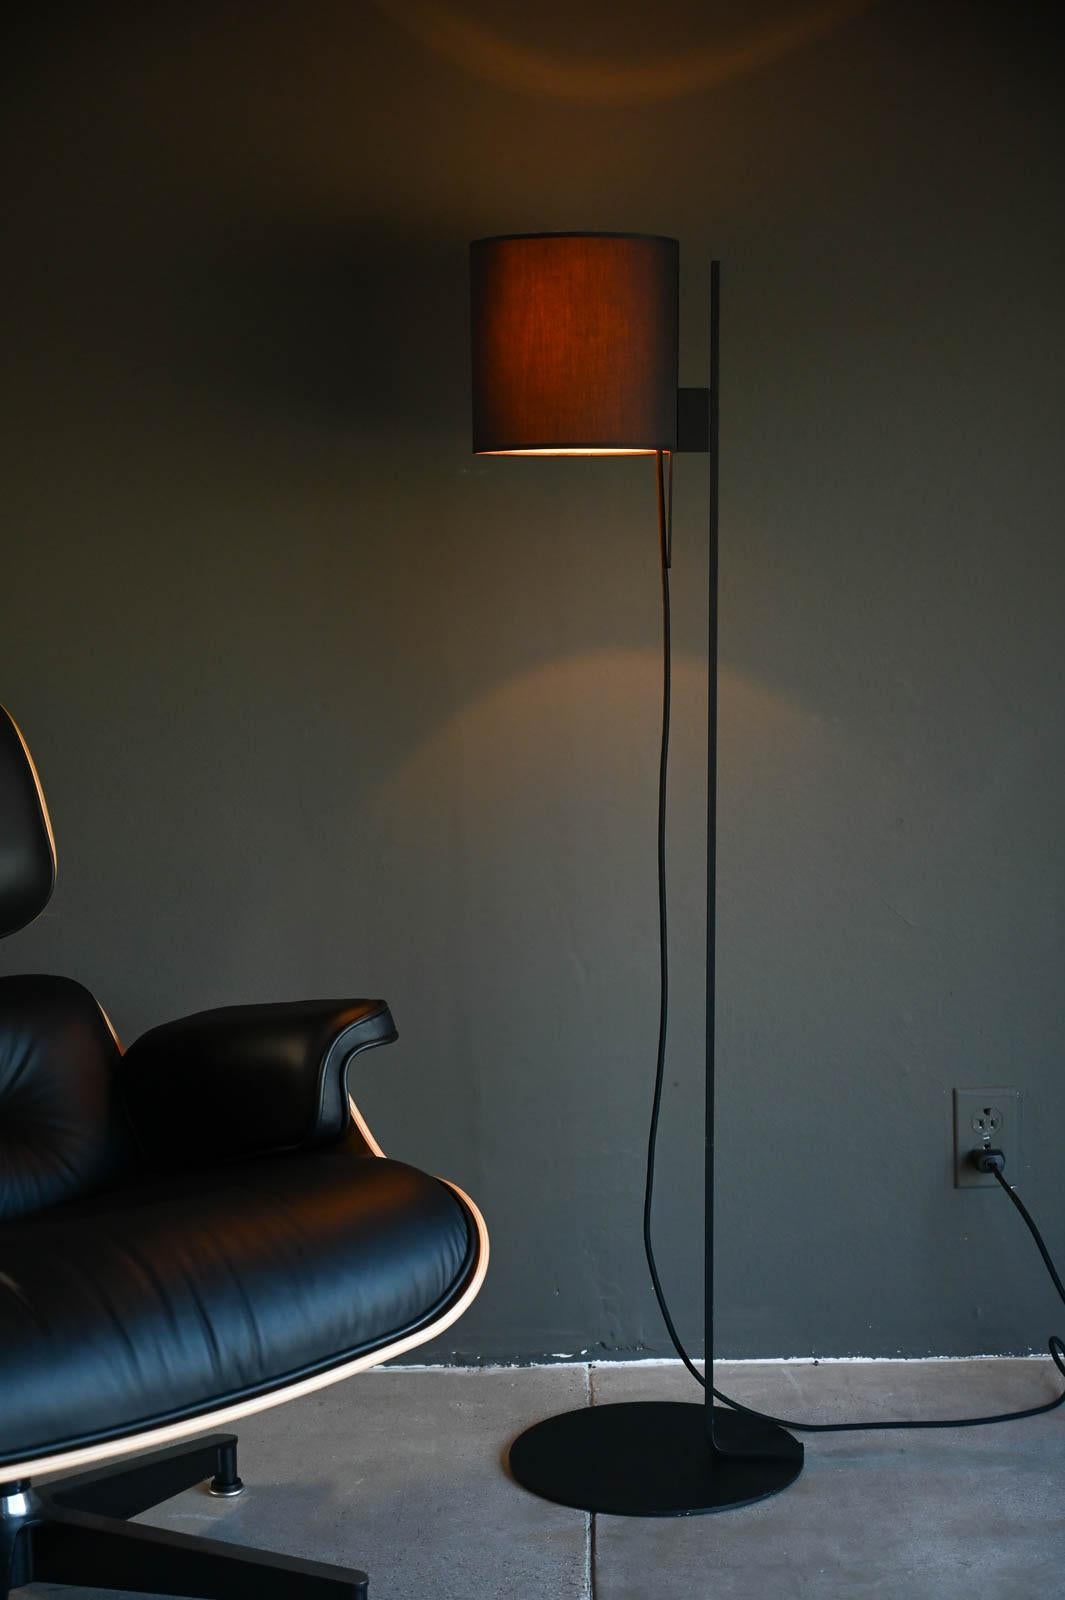 Michael Raasch for Ligne Roset Magnet Floor Lamp, 2021.  La lampe Magnet est une interprétation moderne de la lampe à abat-jour classique. Michael Raasch a conçu une famille de lampes élégantes qui répondent de manière parfaitement modulaire à